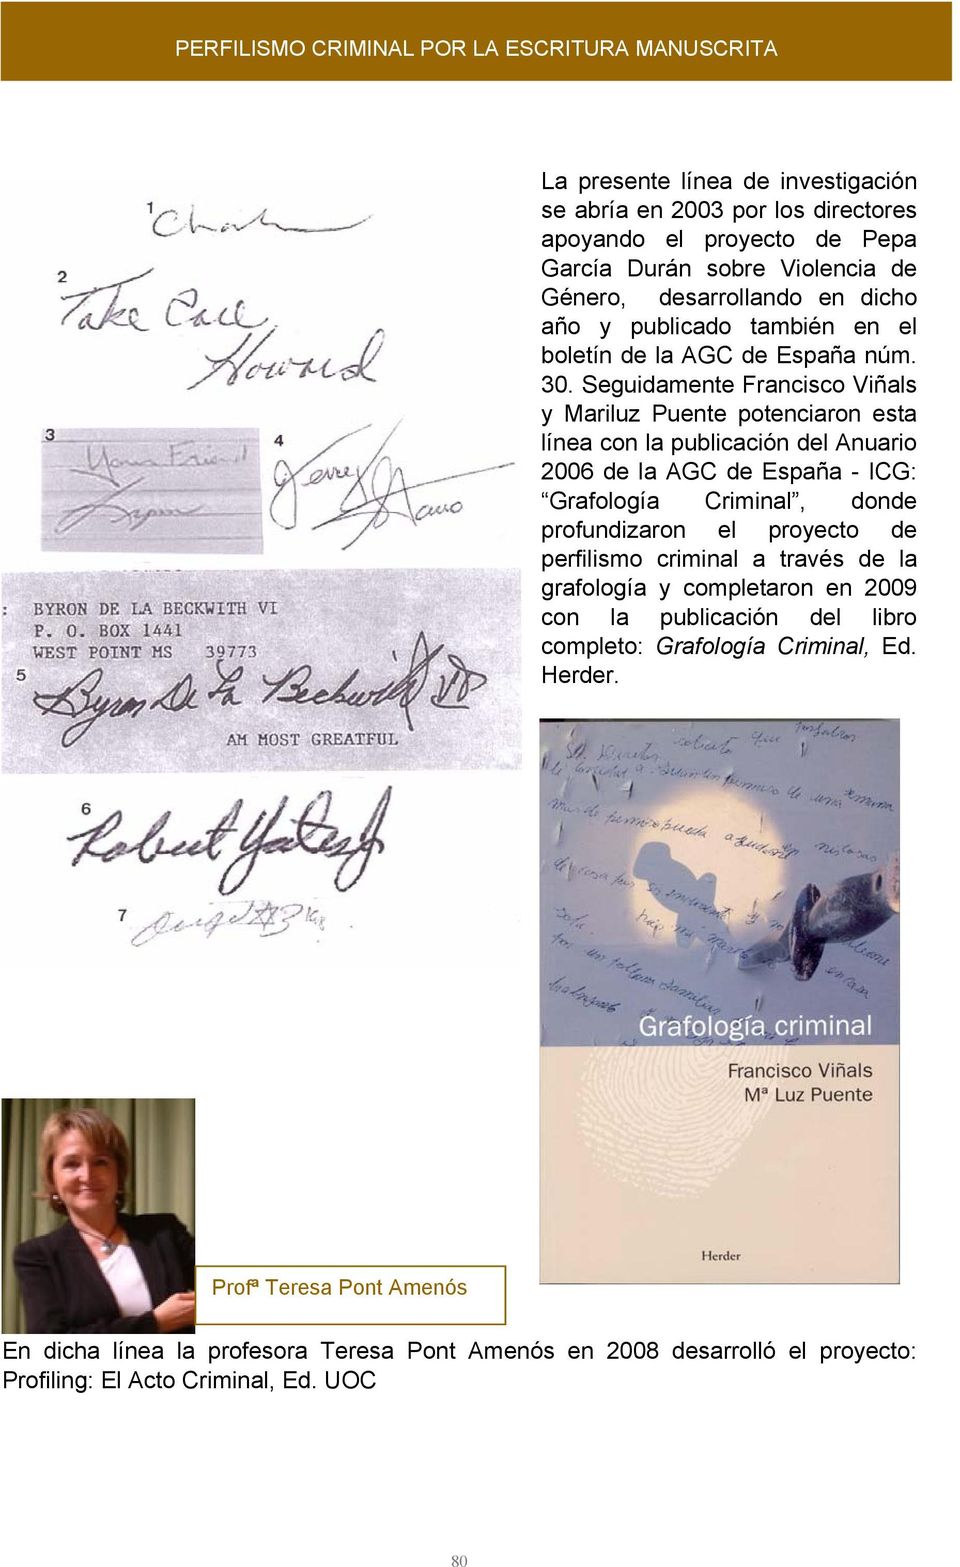 Seguidamente Francisco Viñals y Mariluz Puente potenciaron esta línea con la publicación del Anuario 2006 de la AGC de España - ICG: Grafología Criminal, donde profundizaron el proyecto